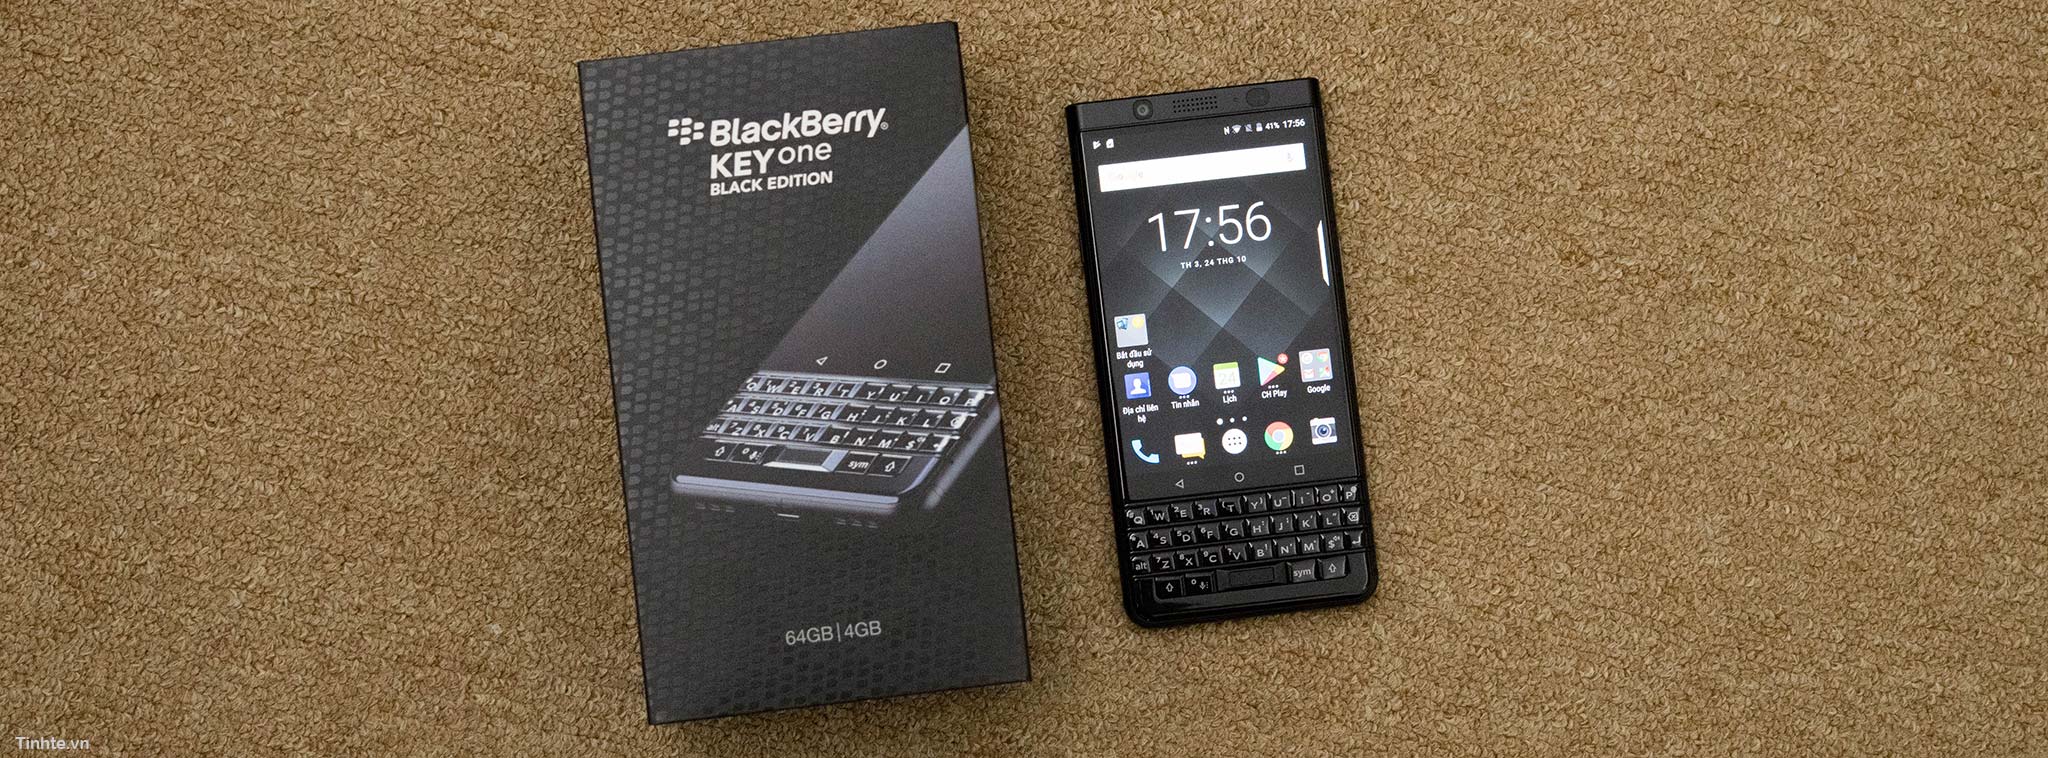 Hình ảnh BlackBerry Key One phiên bản đen chính hãng giá15.9 triệu đồng